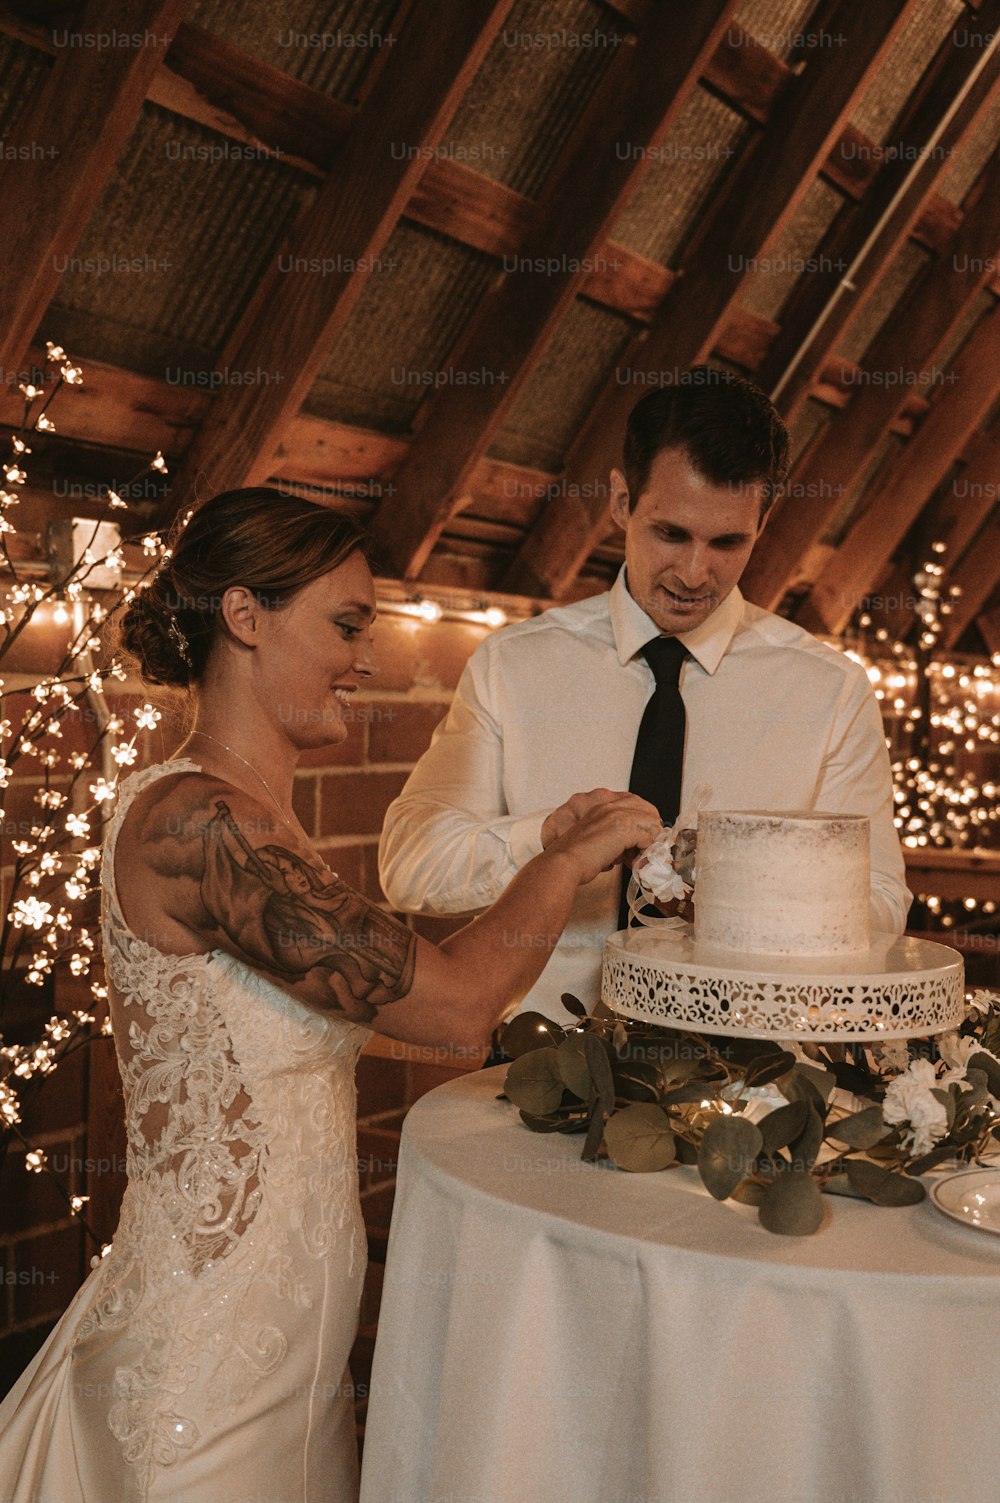 Les mariés coupent leur gâteau de mariage